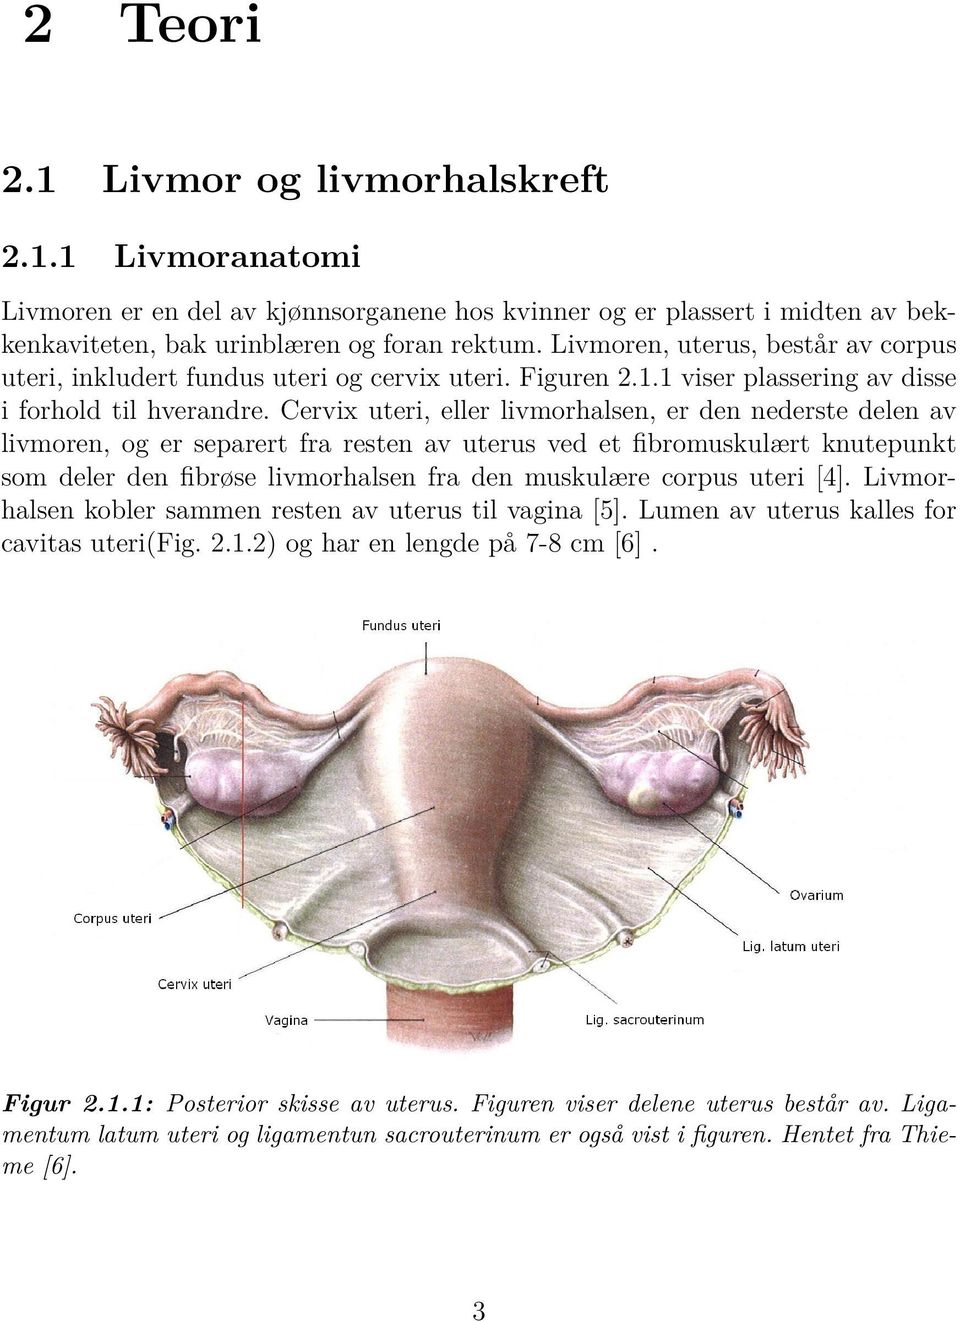 Cervix uteri, eller livmorhalsen, er den nederste delen av livmoren, og er separert fra resten av uterus ved et fibromuskulært knutepunkt som deler den fibrøse livmorhalsen fra den muskulære corpus